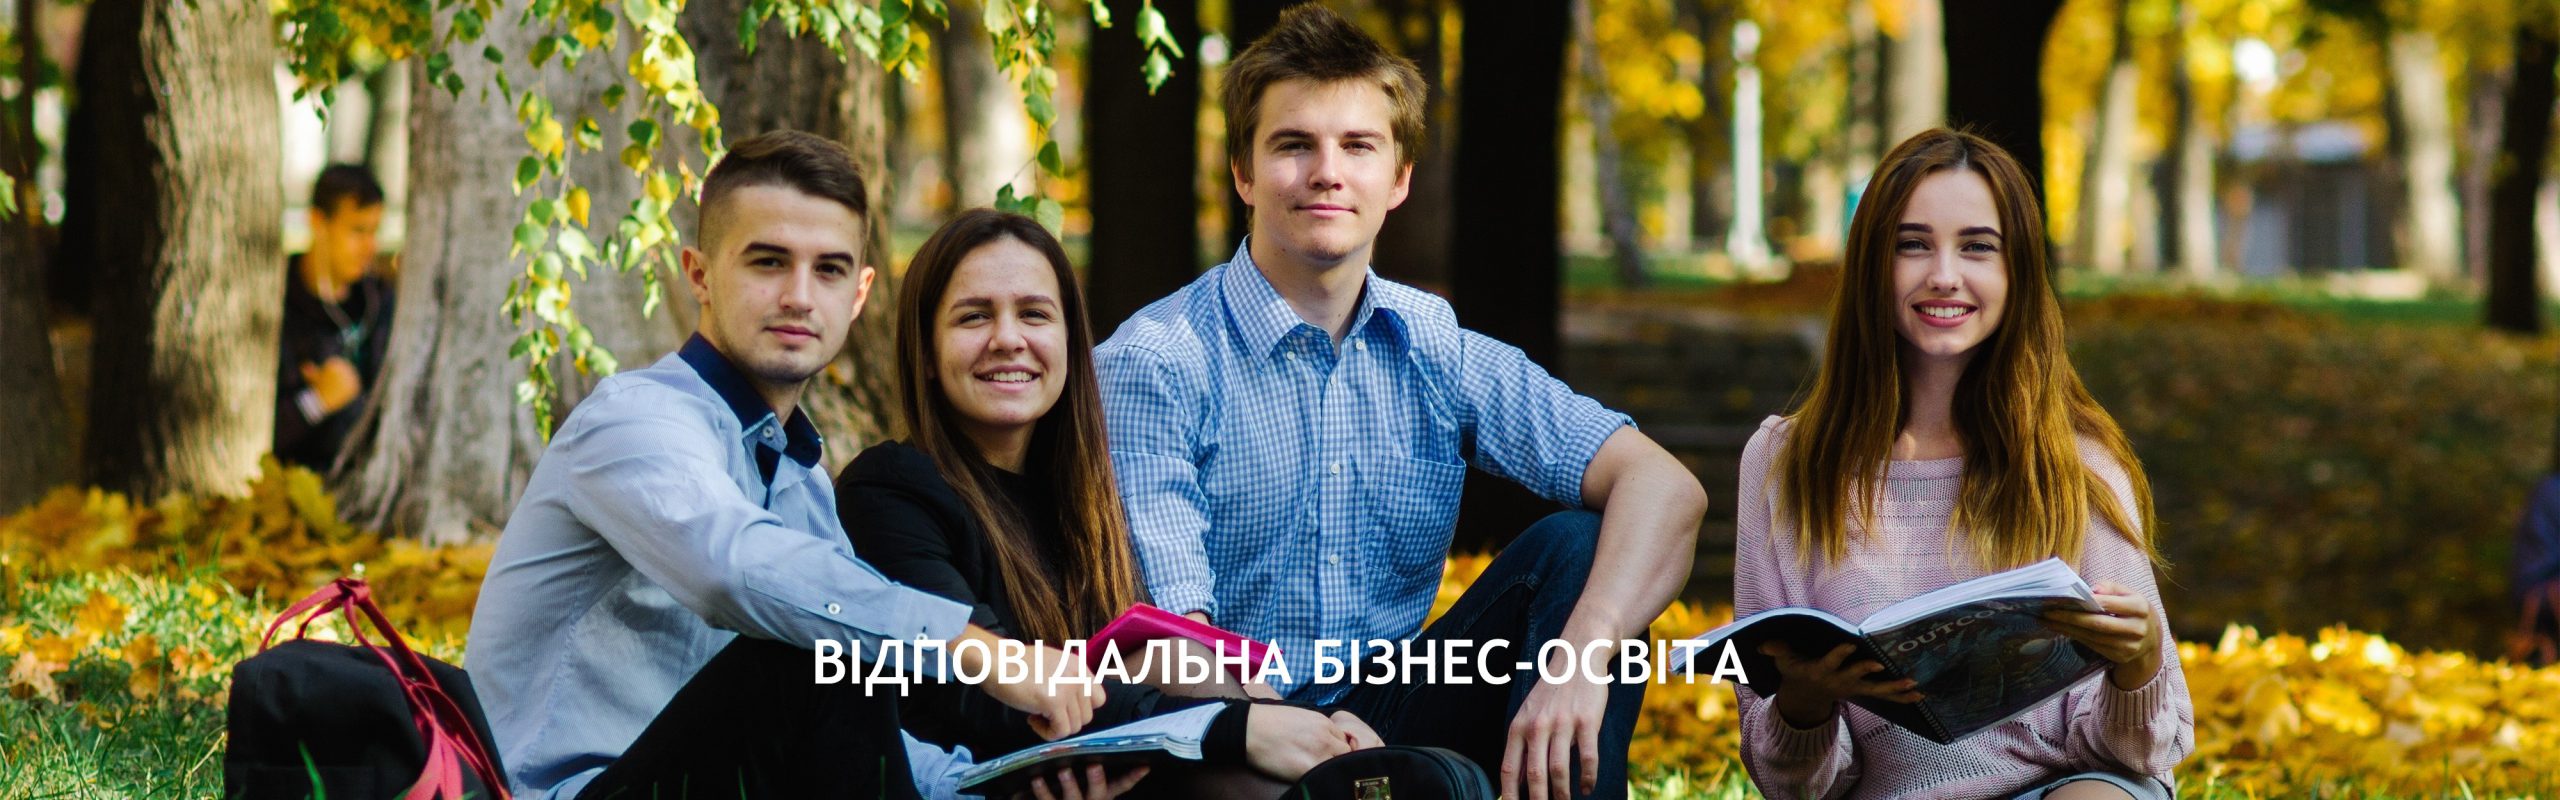 CSR Ukraine запускає третю хвилю лідерської програми “SDG Амбасадори” для молоді!